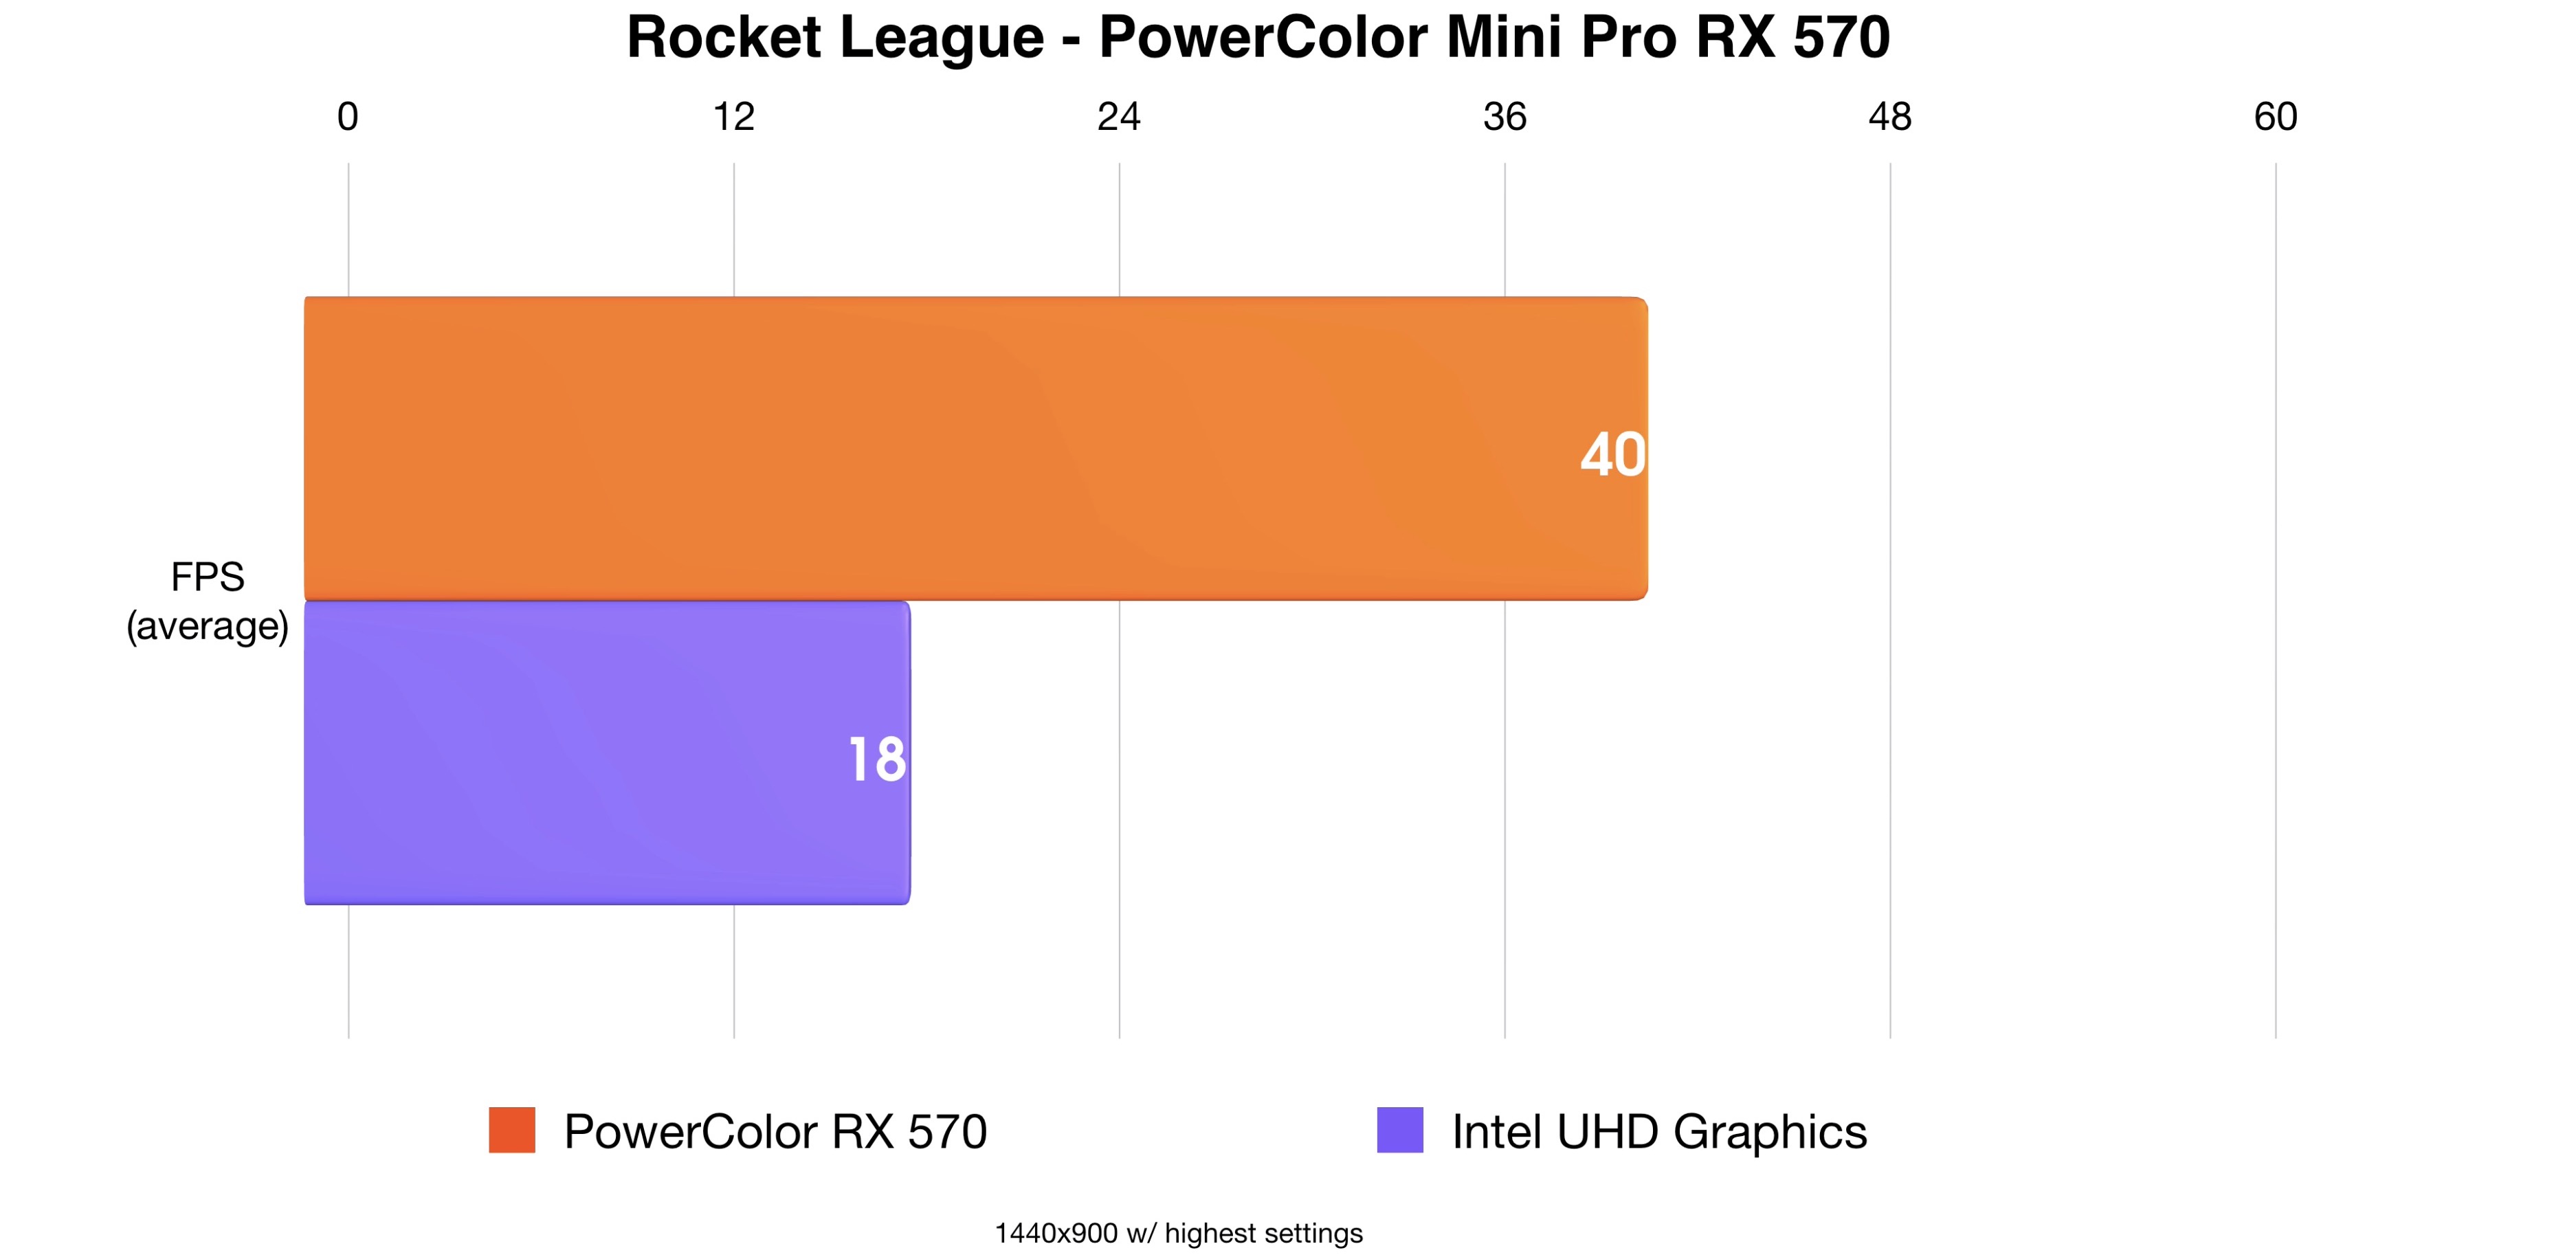 PowerColor Mini Pro RX 570 Rocket League test